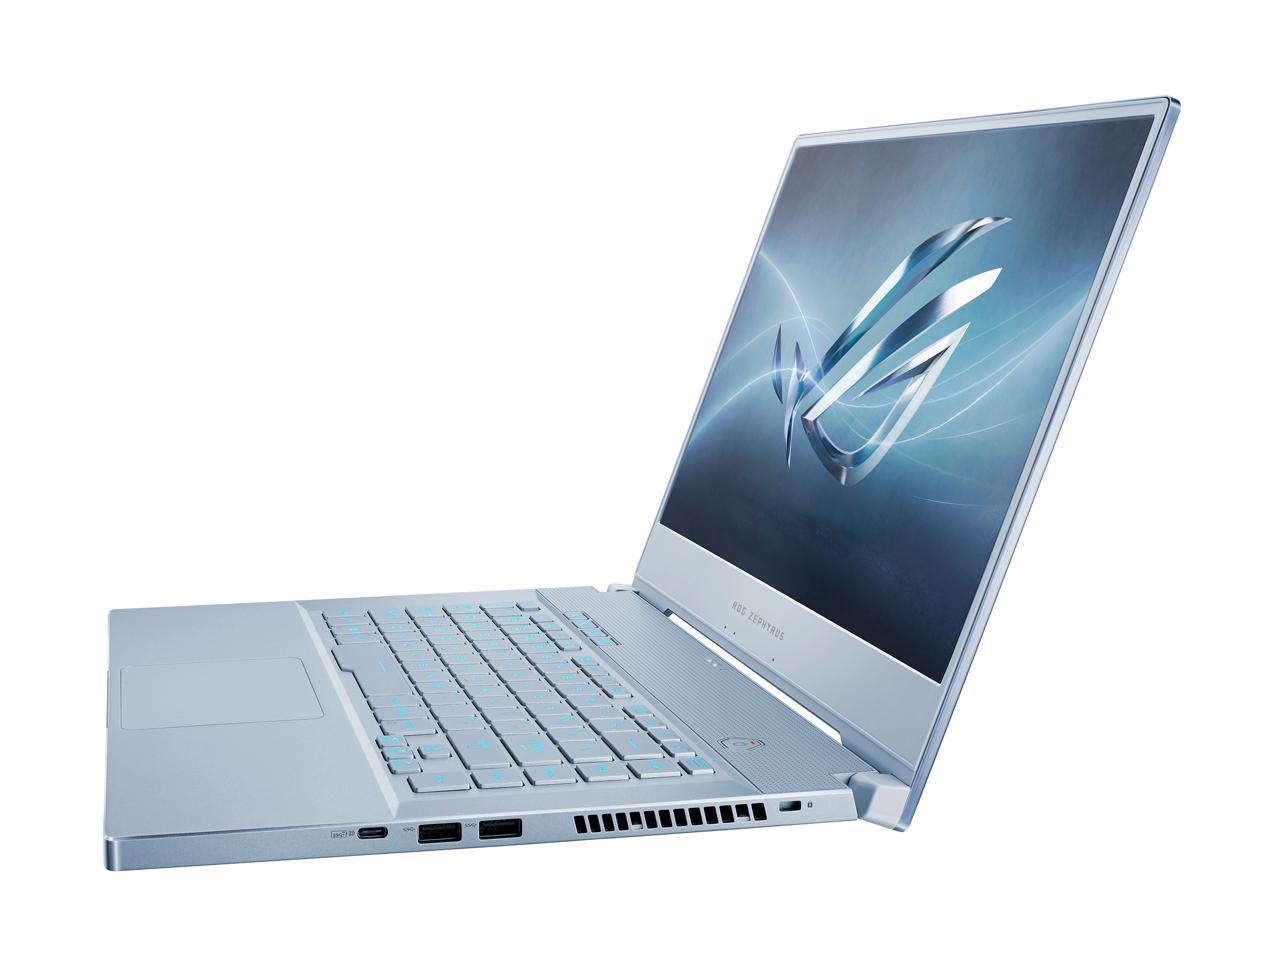 ROG Zephyrus M GU502GU-XH74-BL Gaming Laptop - 15.6" 240 Hz FHD IPS, GeForce GTX 1660 Ti, Intel Core i7-9750H, 16 GB DDR4, 512 GB SSD, Per-Key RGB, Windows 10 Pro, Glacier Blue